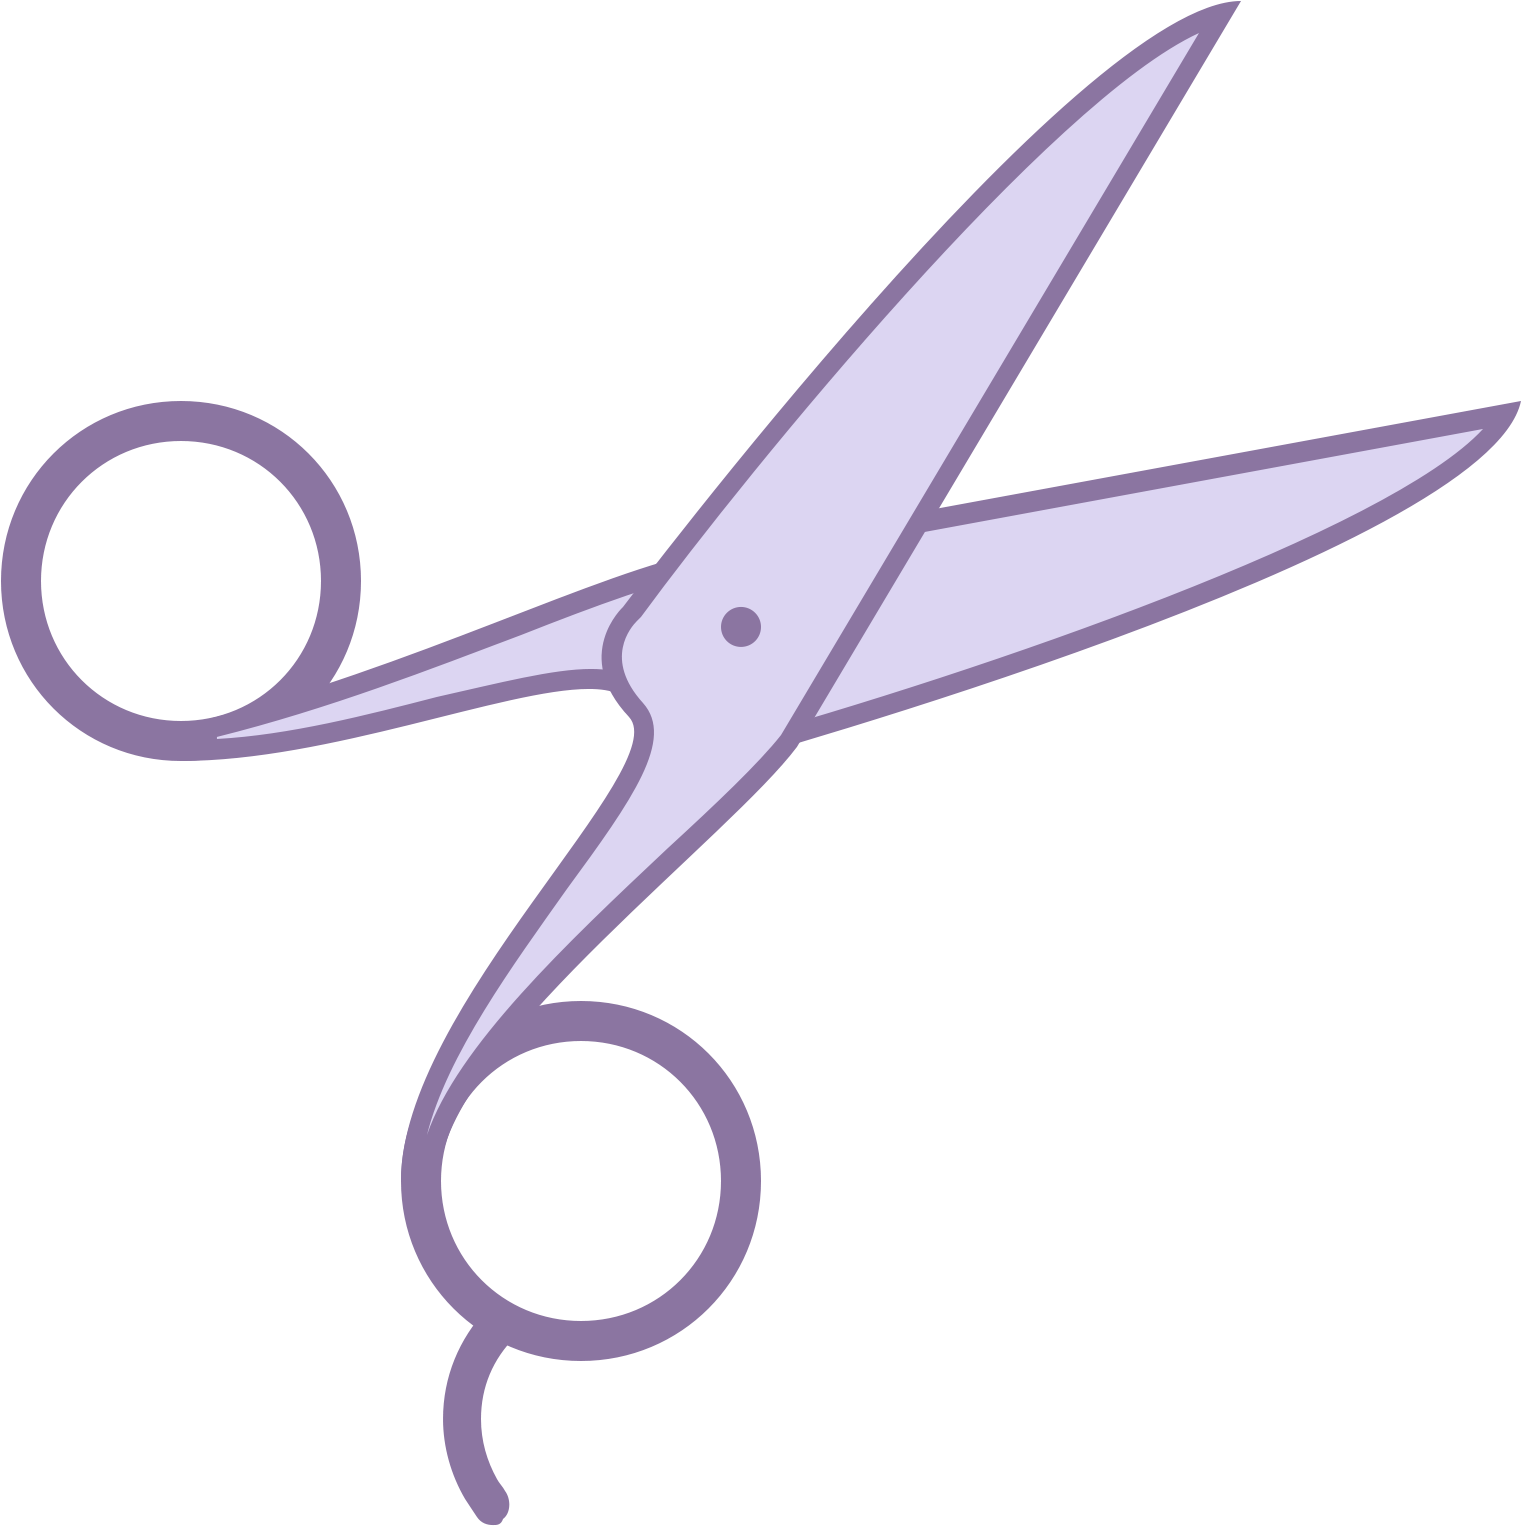 Scissors Vector Free Download Scissors Png Vector